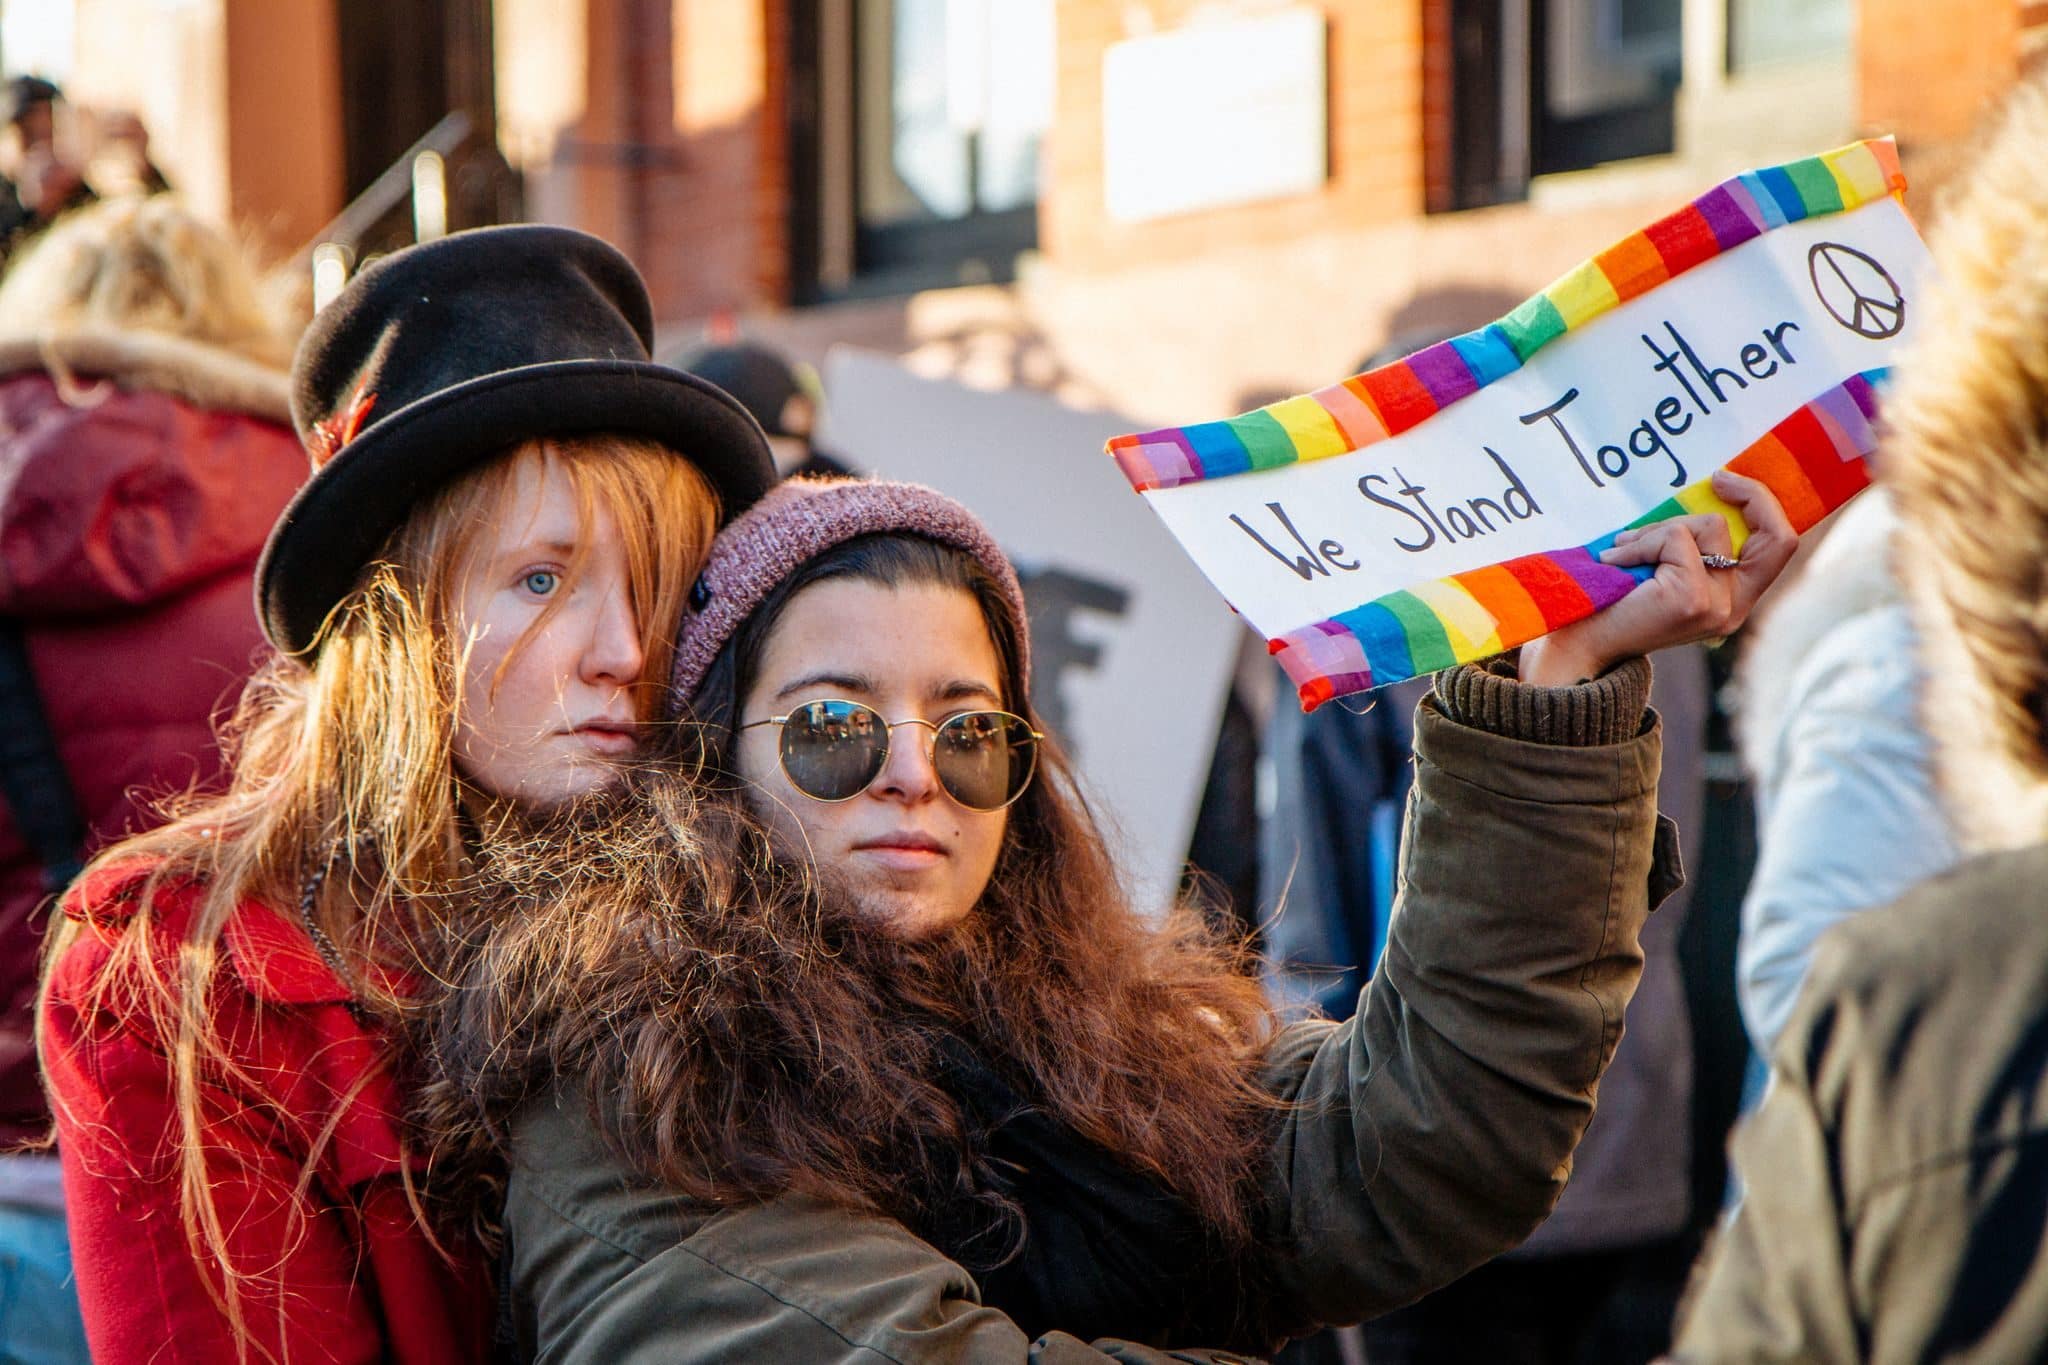 Rassemblement en solidarité avec la communauté LGBT à New-York après une mesure anti-immigration de l'administration Trump (Photo Mathias Wasik / FlickR / cc)